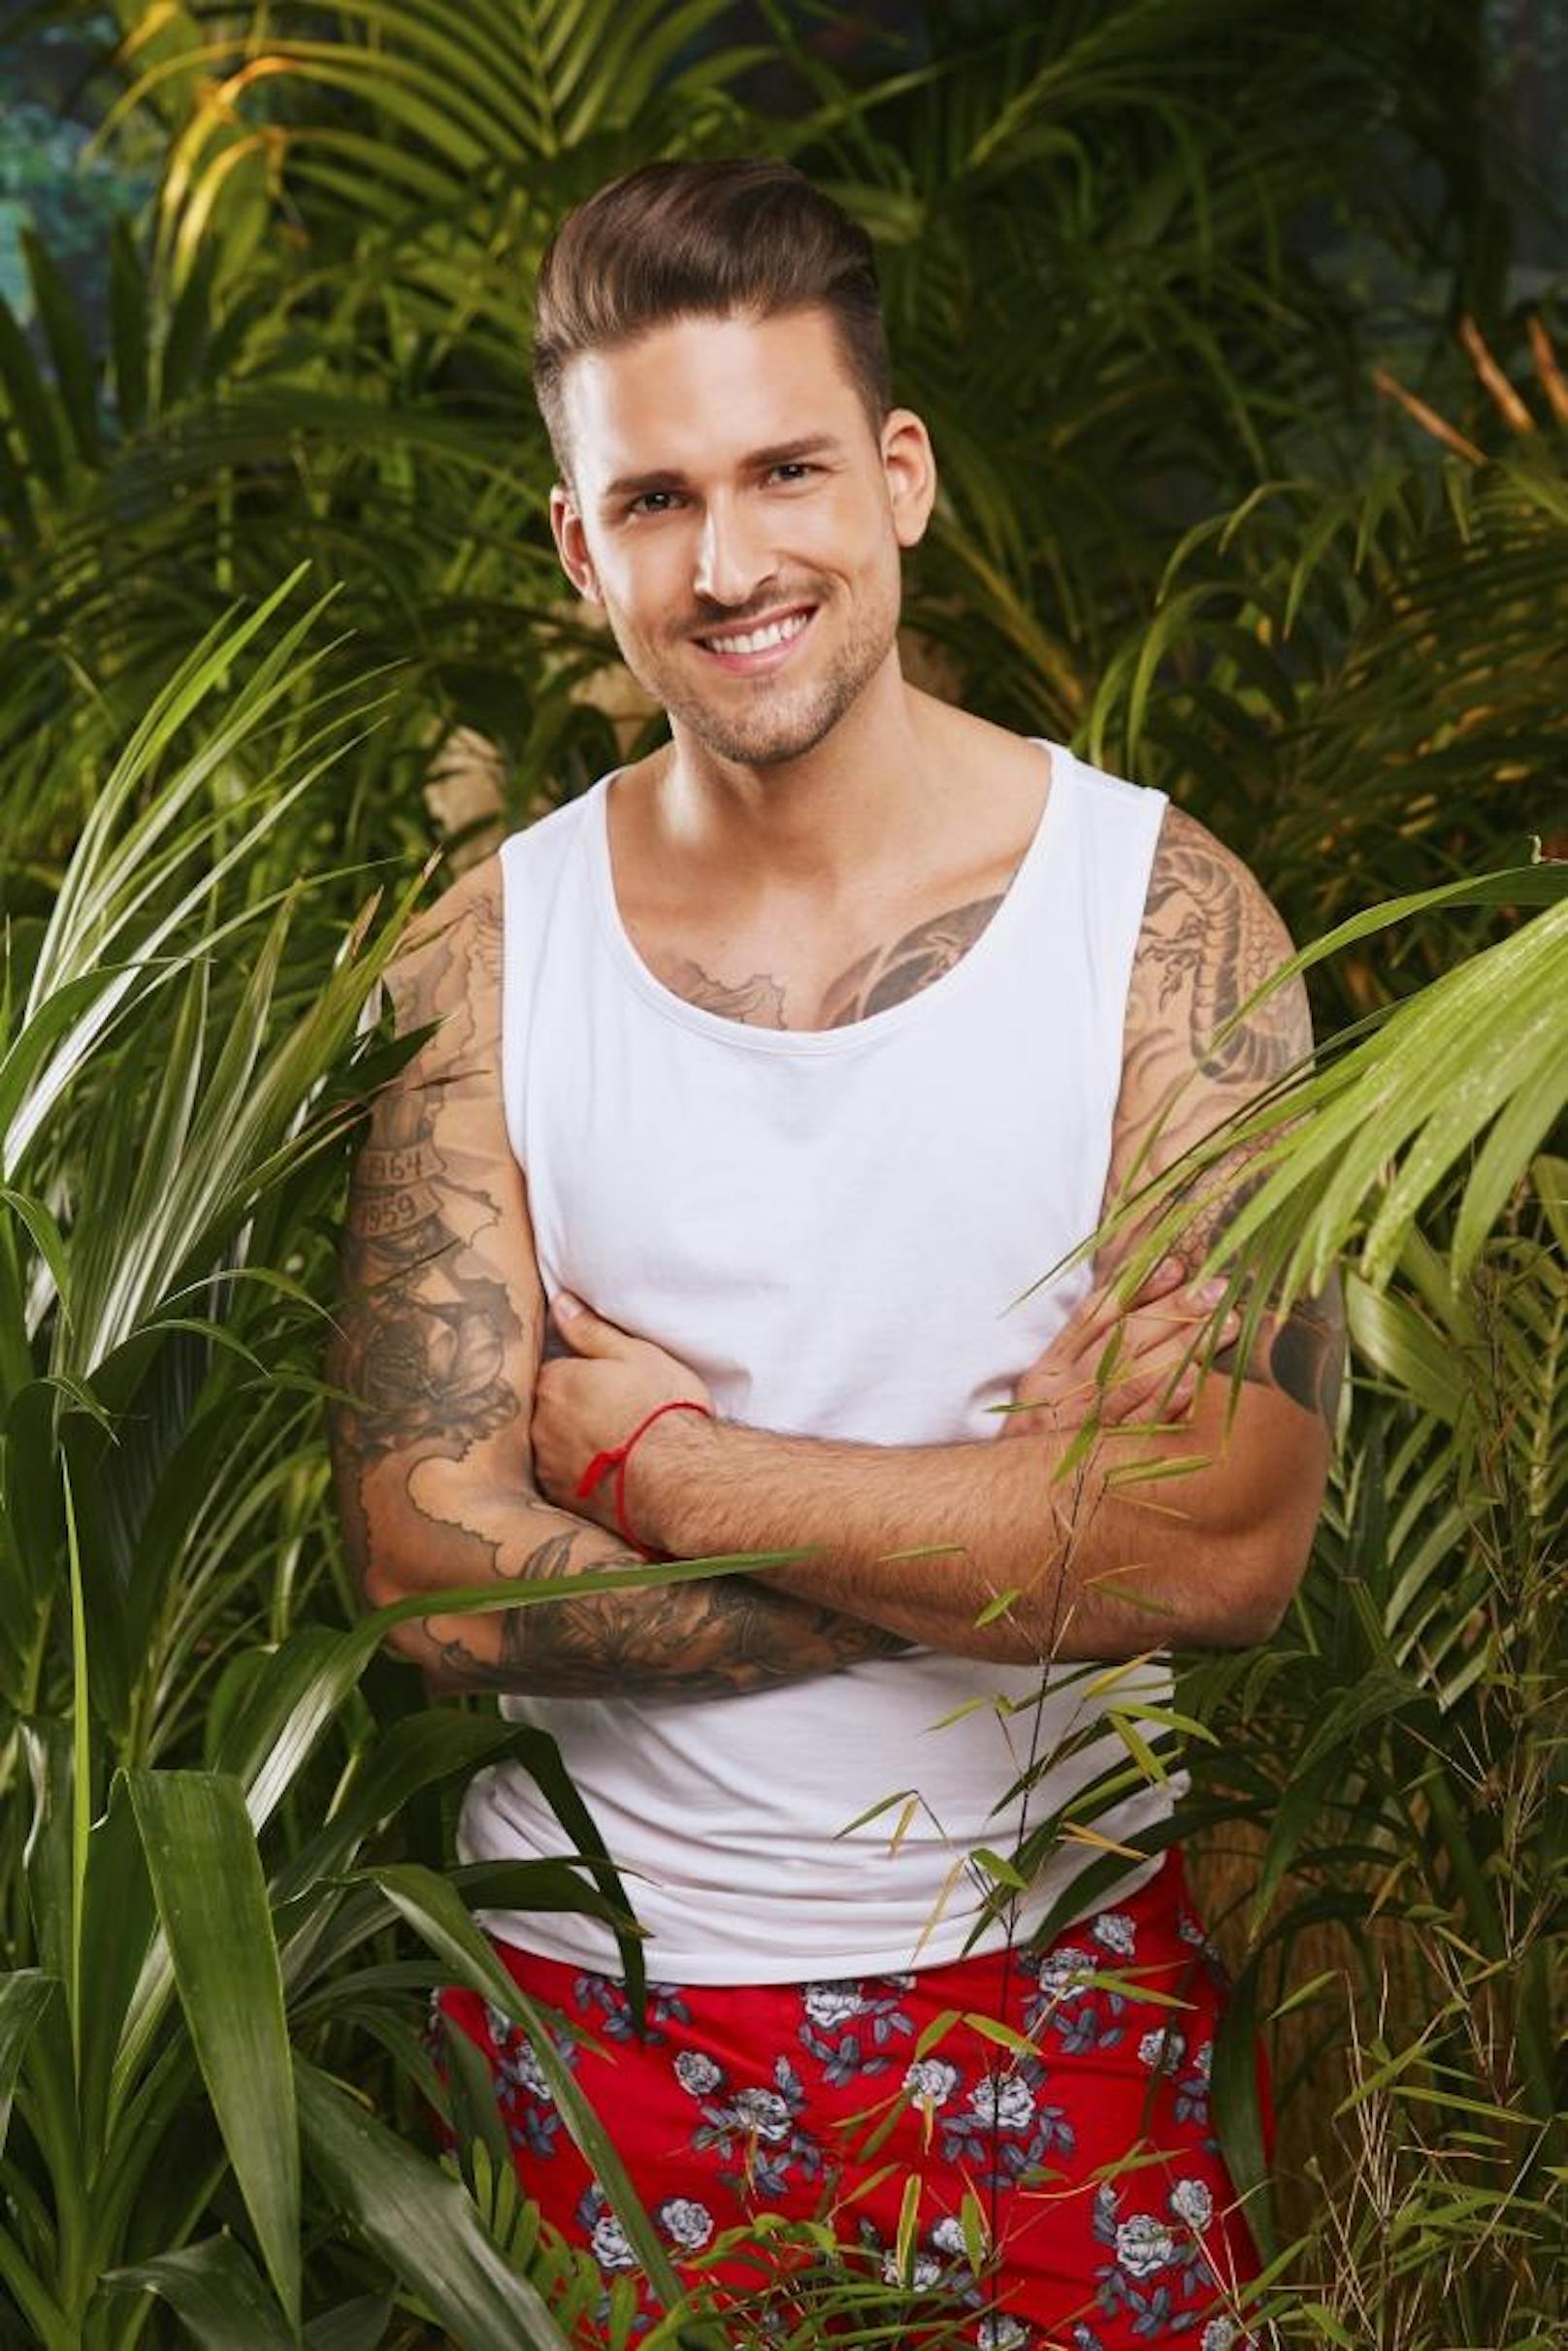 Der Reality-TV erprobte Marco Cerullo (31, "Bachelor in Paradise") zieht ebenfalls in das Dschungelcamp.